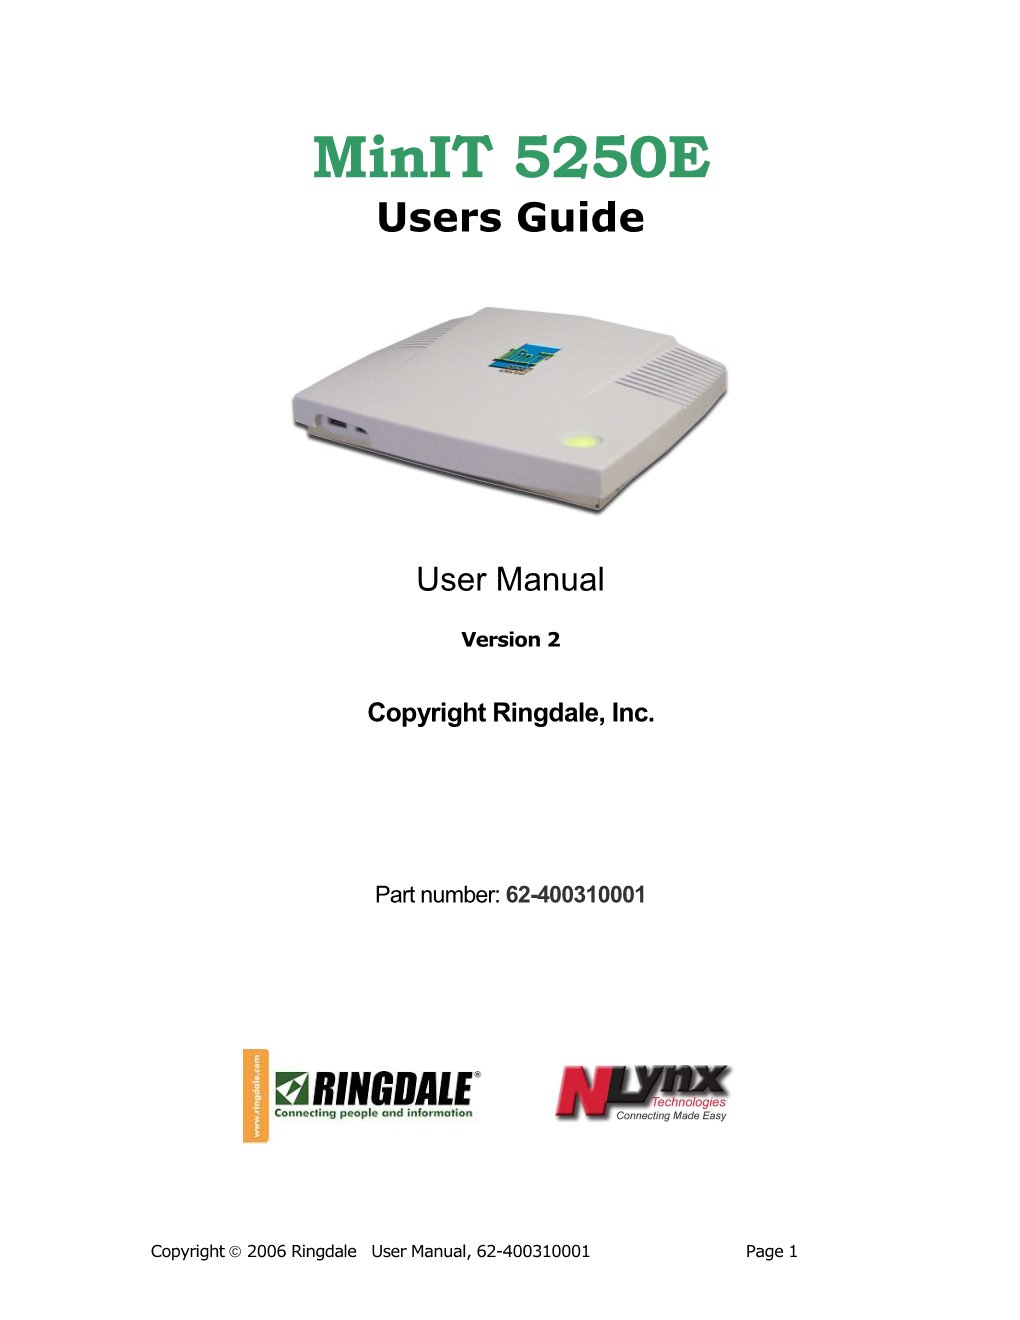 Minit-5250E User Guide II